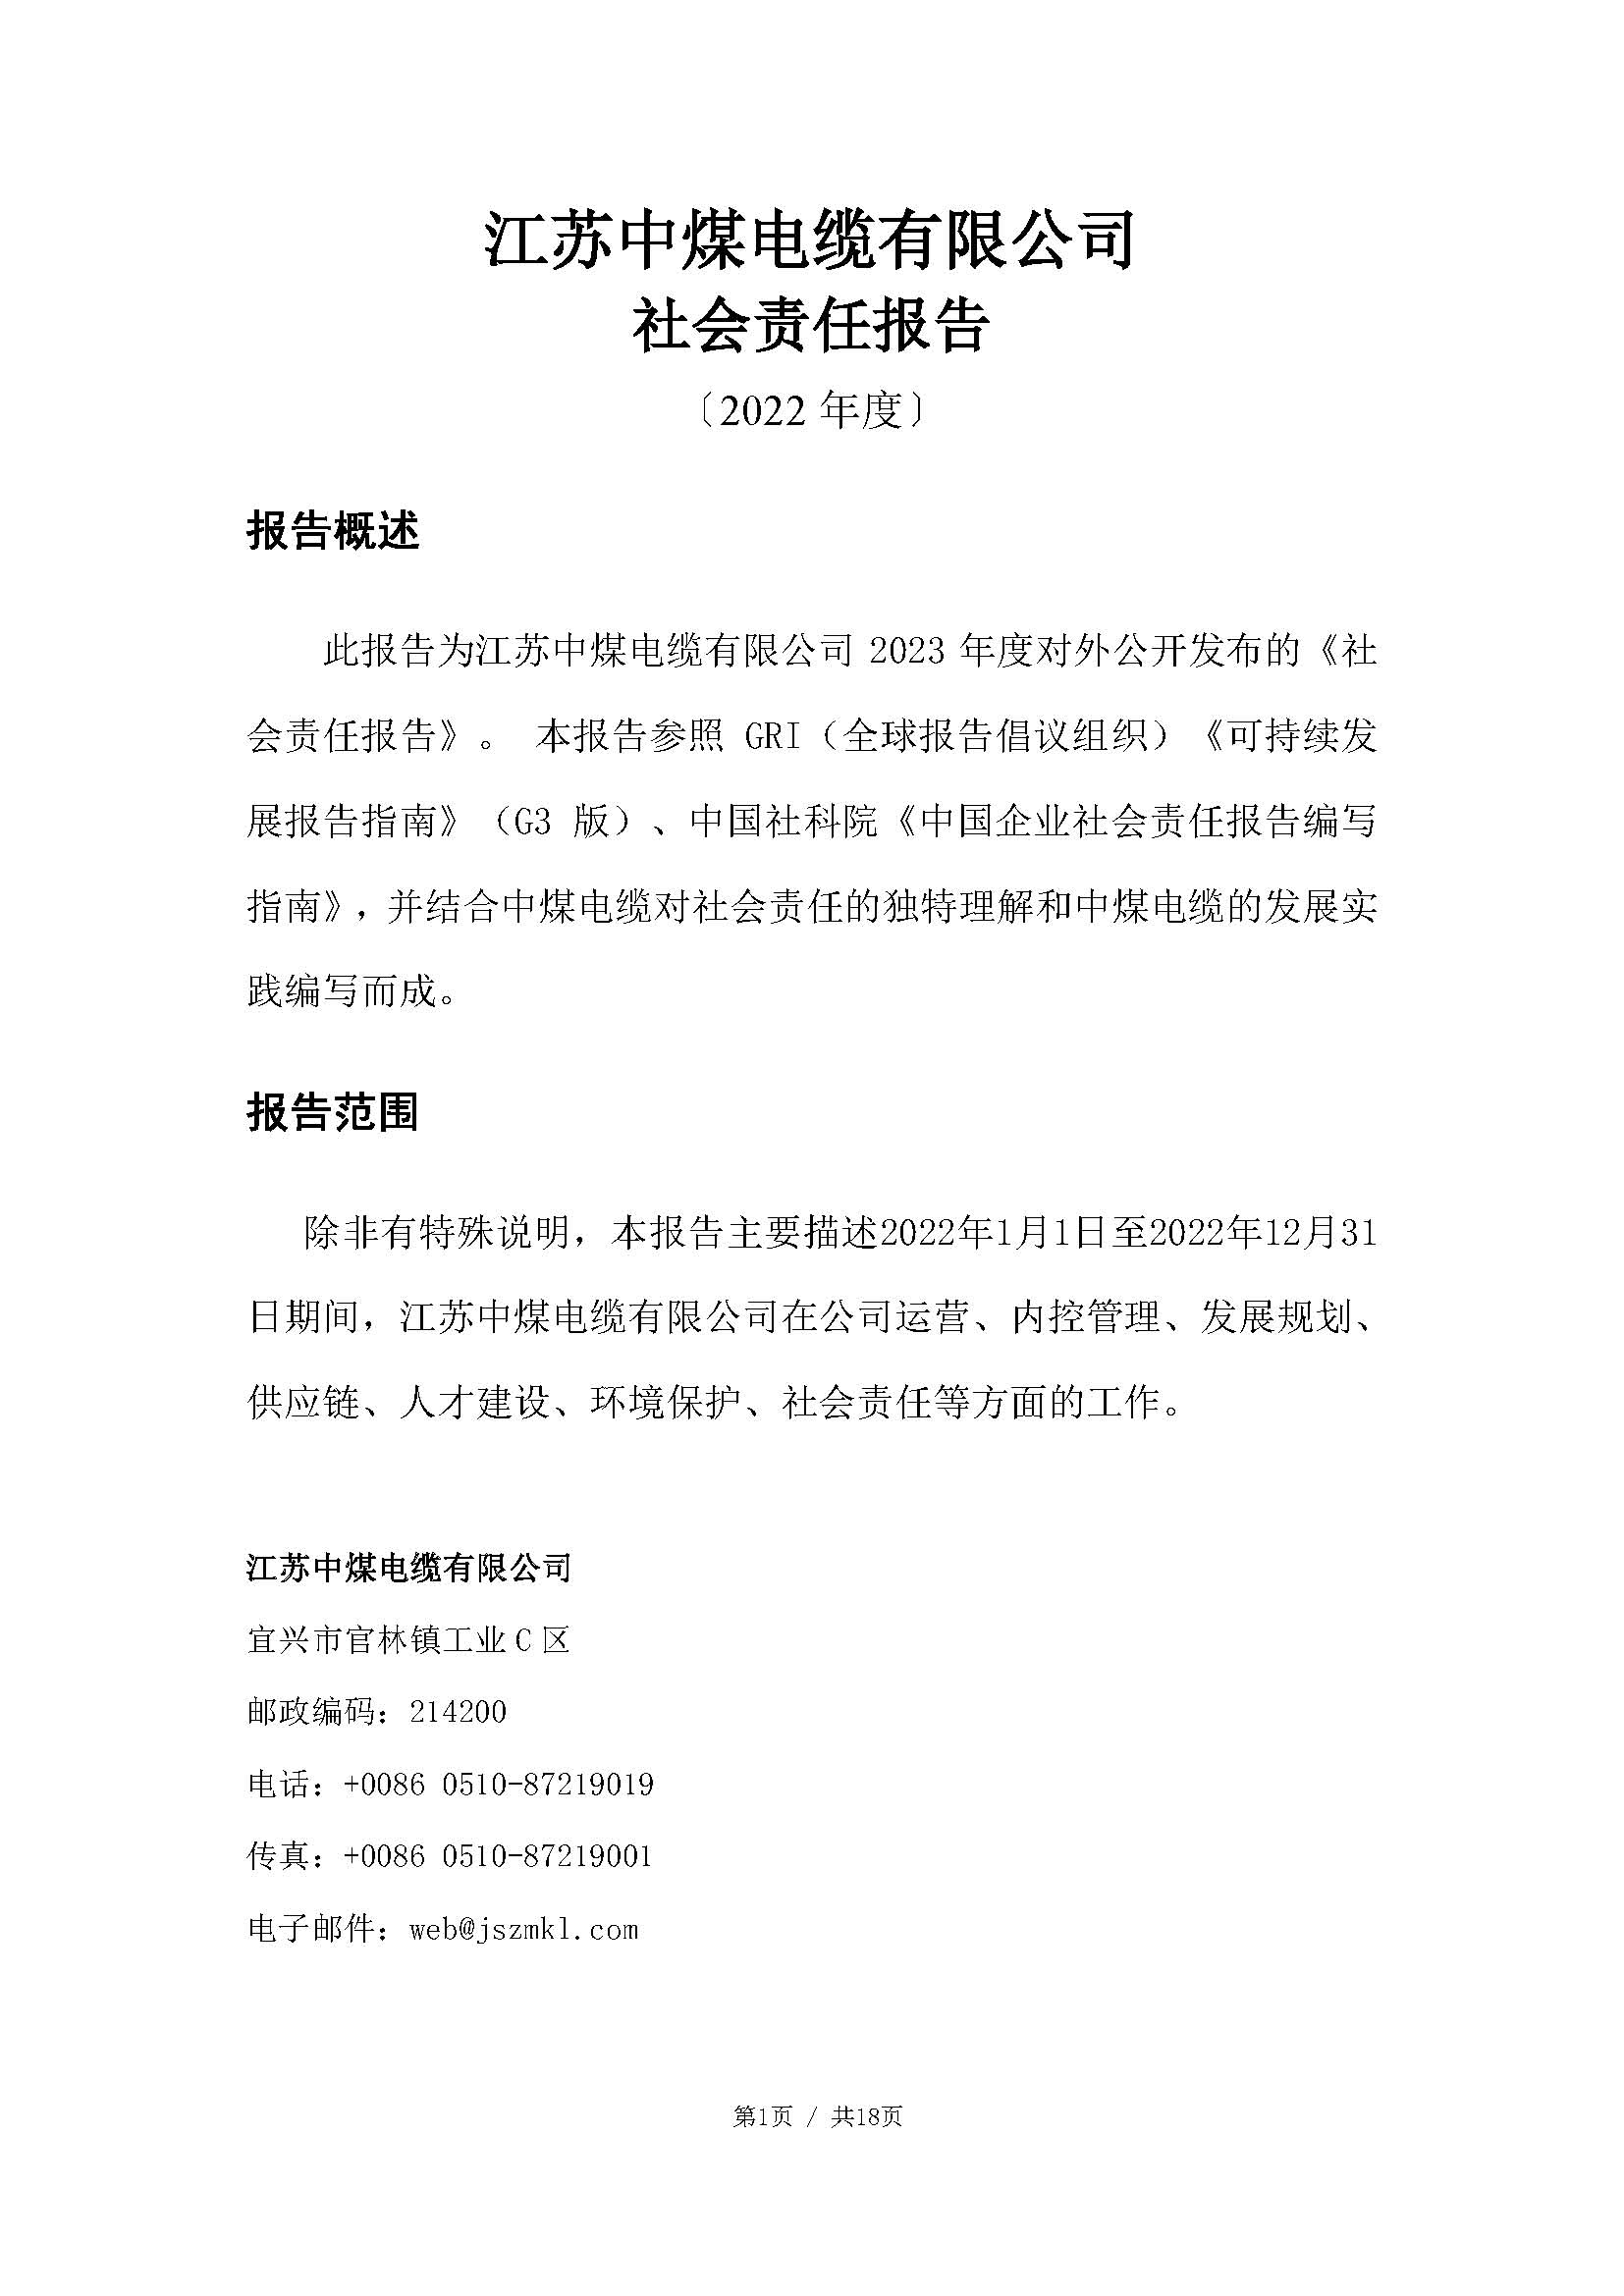 江苏中煤电缆有限公司2022年度社会责任报告